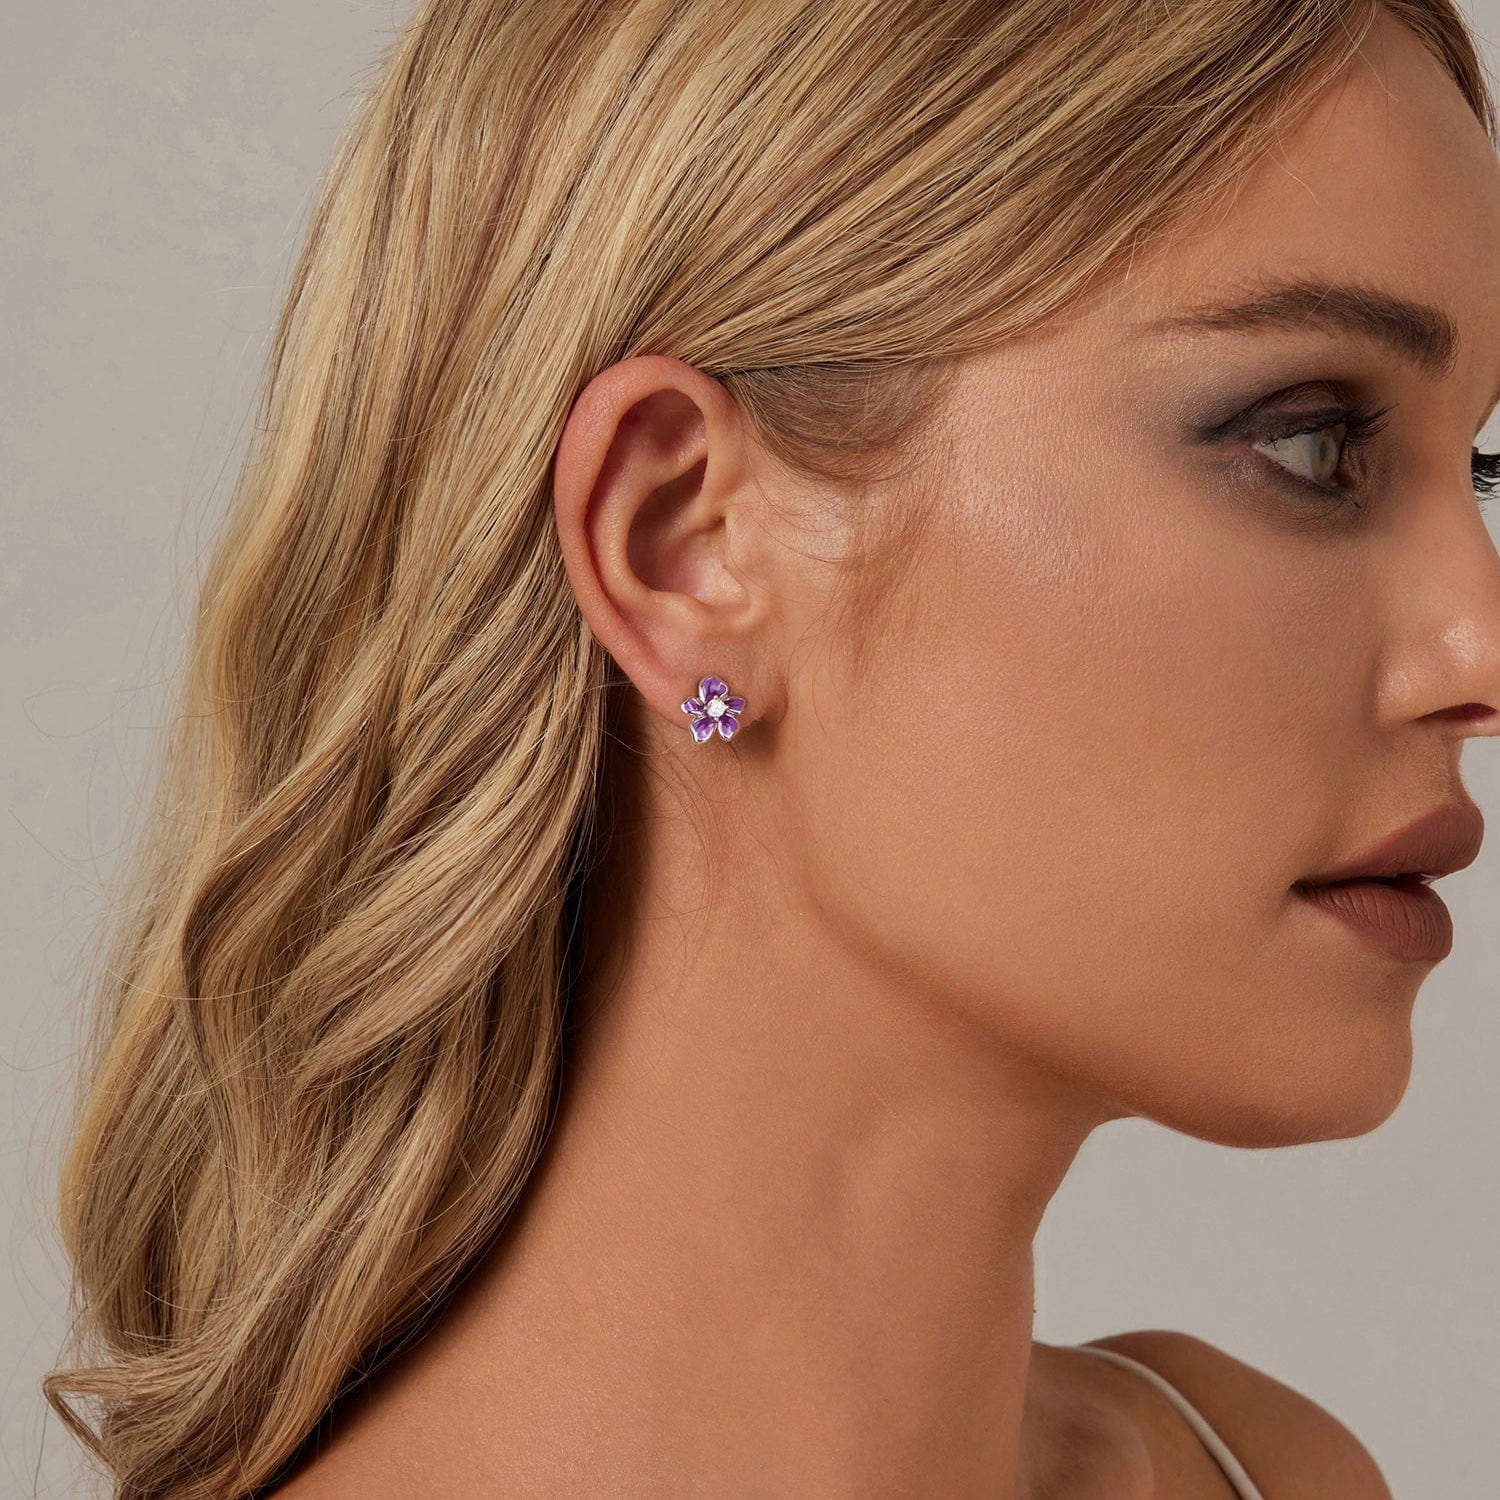 jewelaus Earrings Purple Flower Earrings